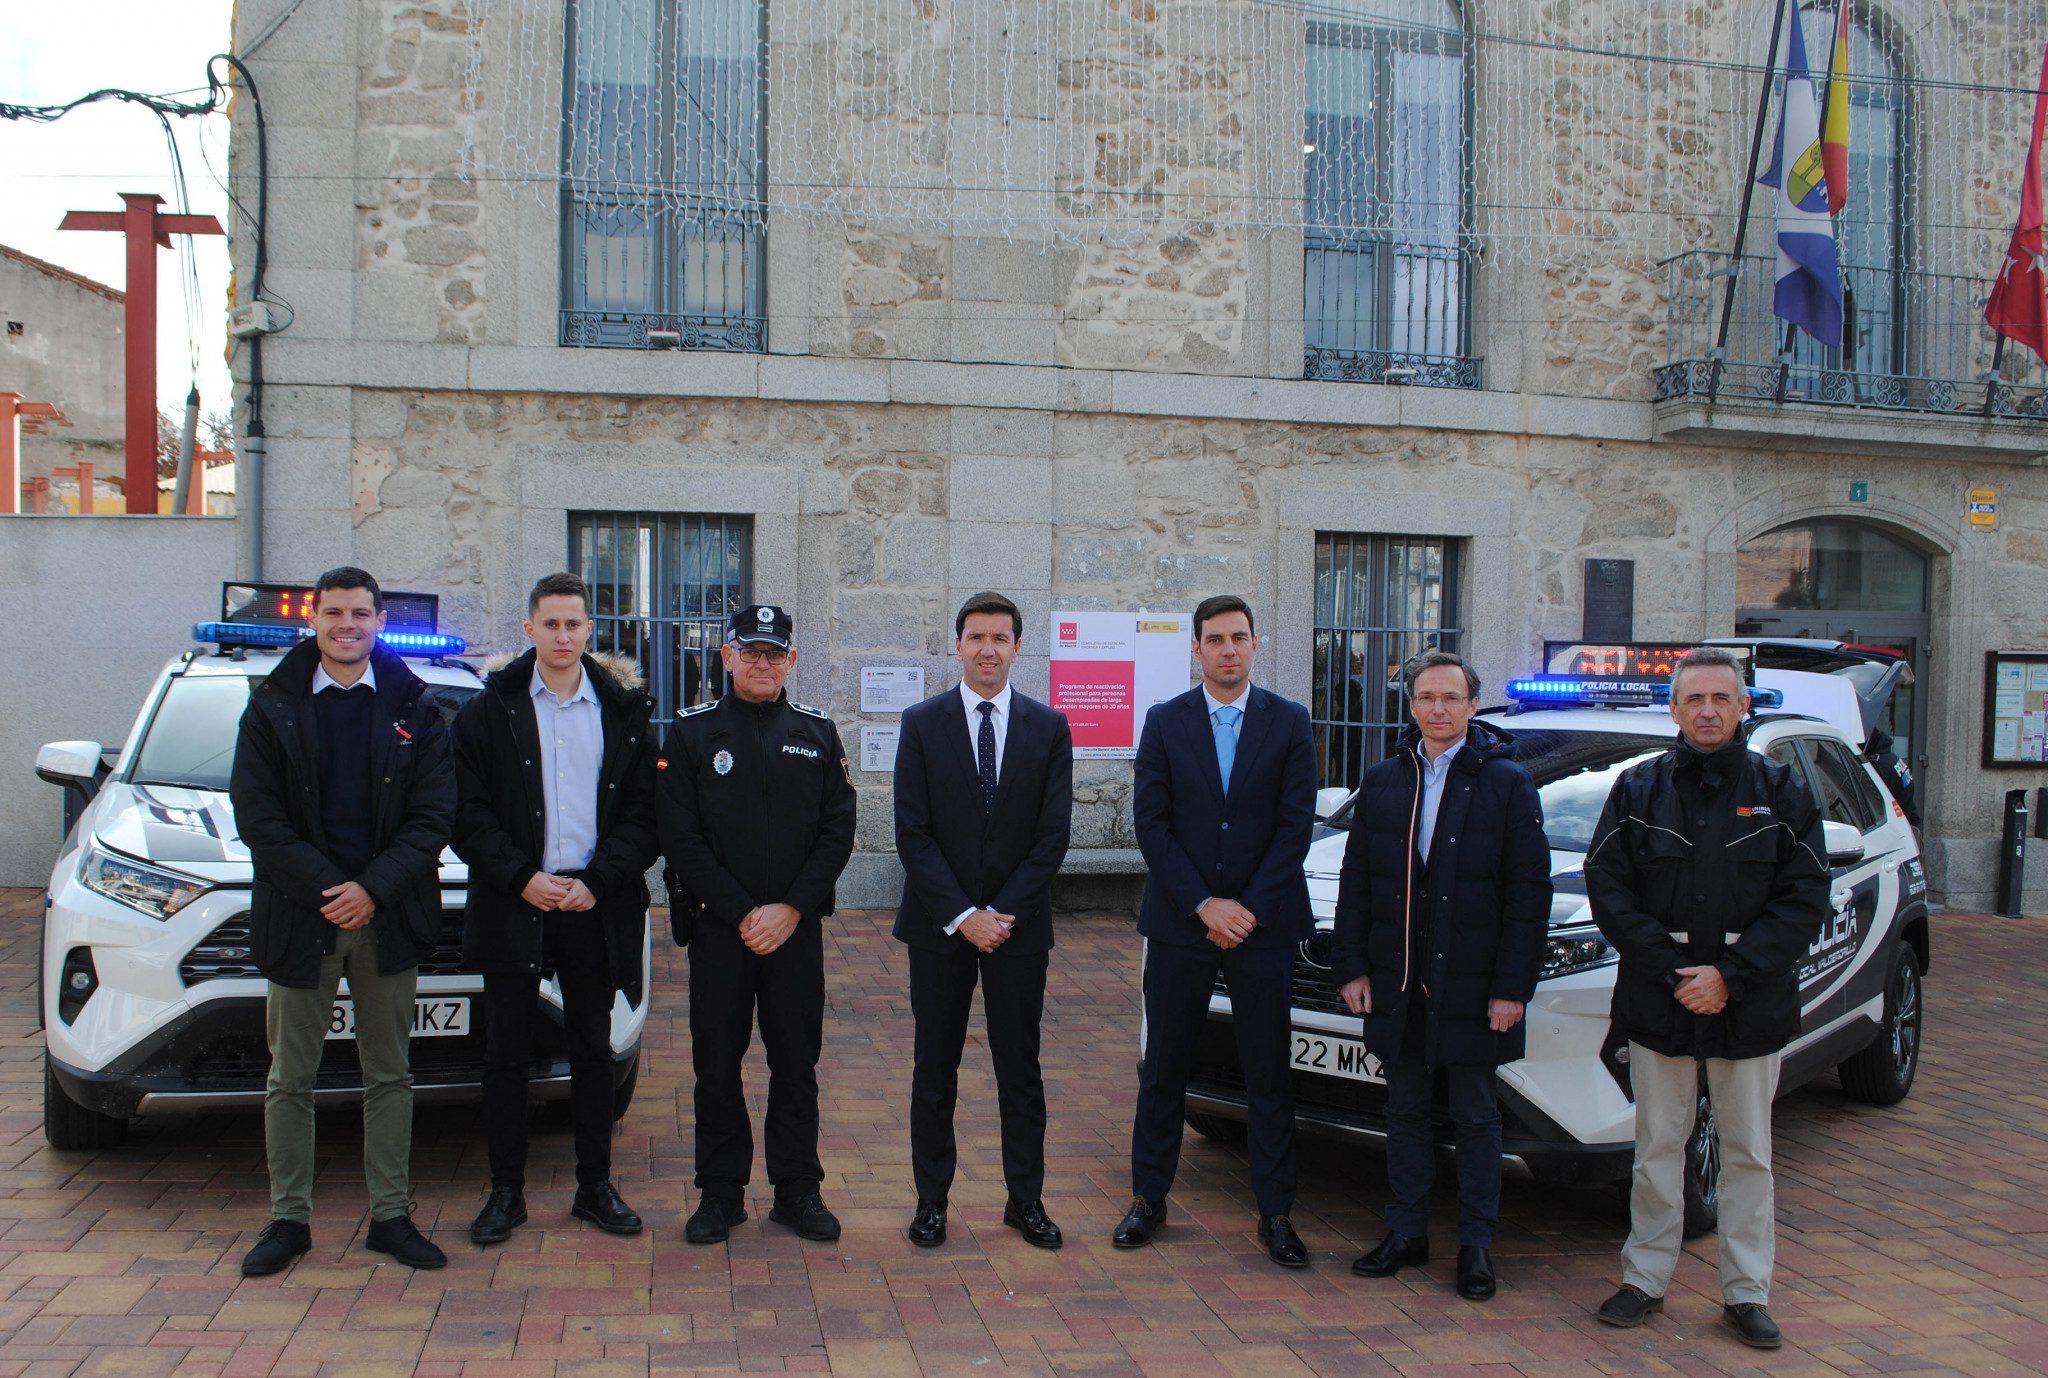 Presentación de los nuevos vehículos de la Policía Local de Valdemorillo